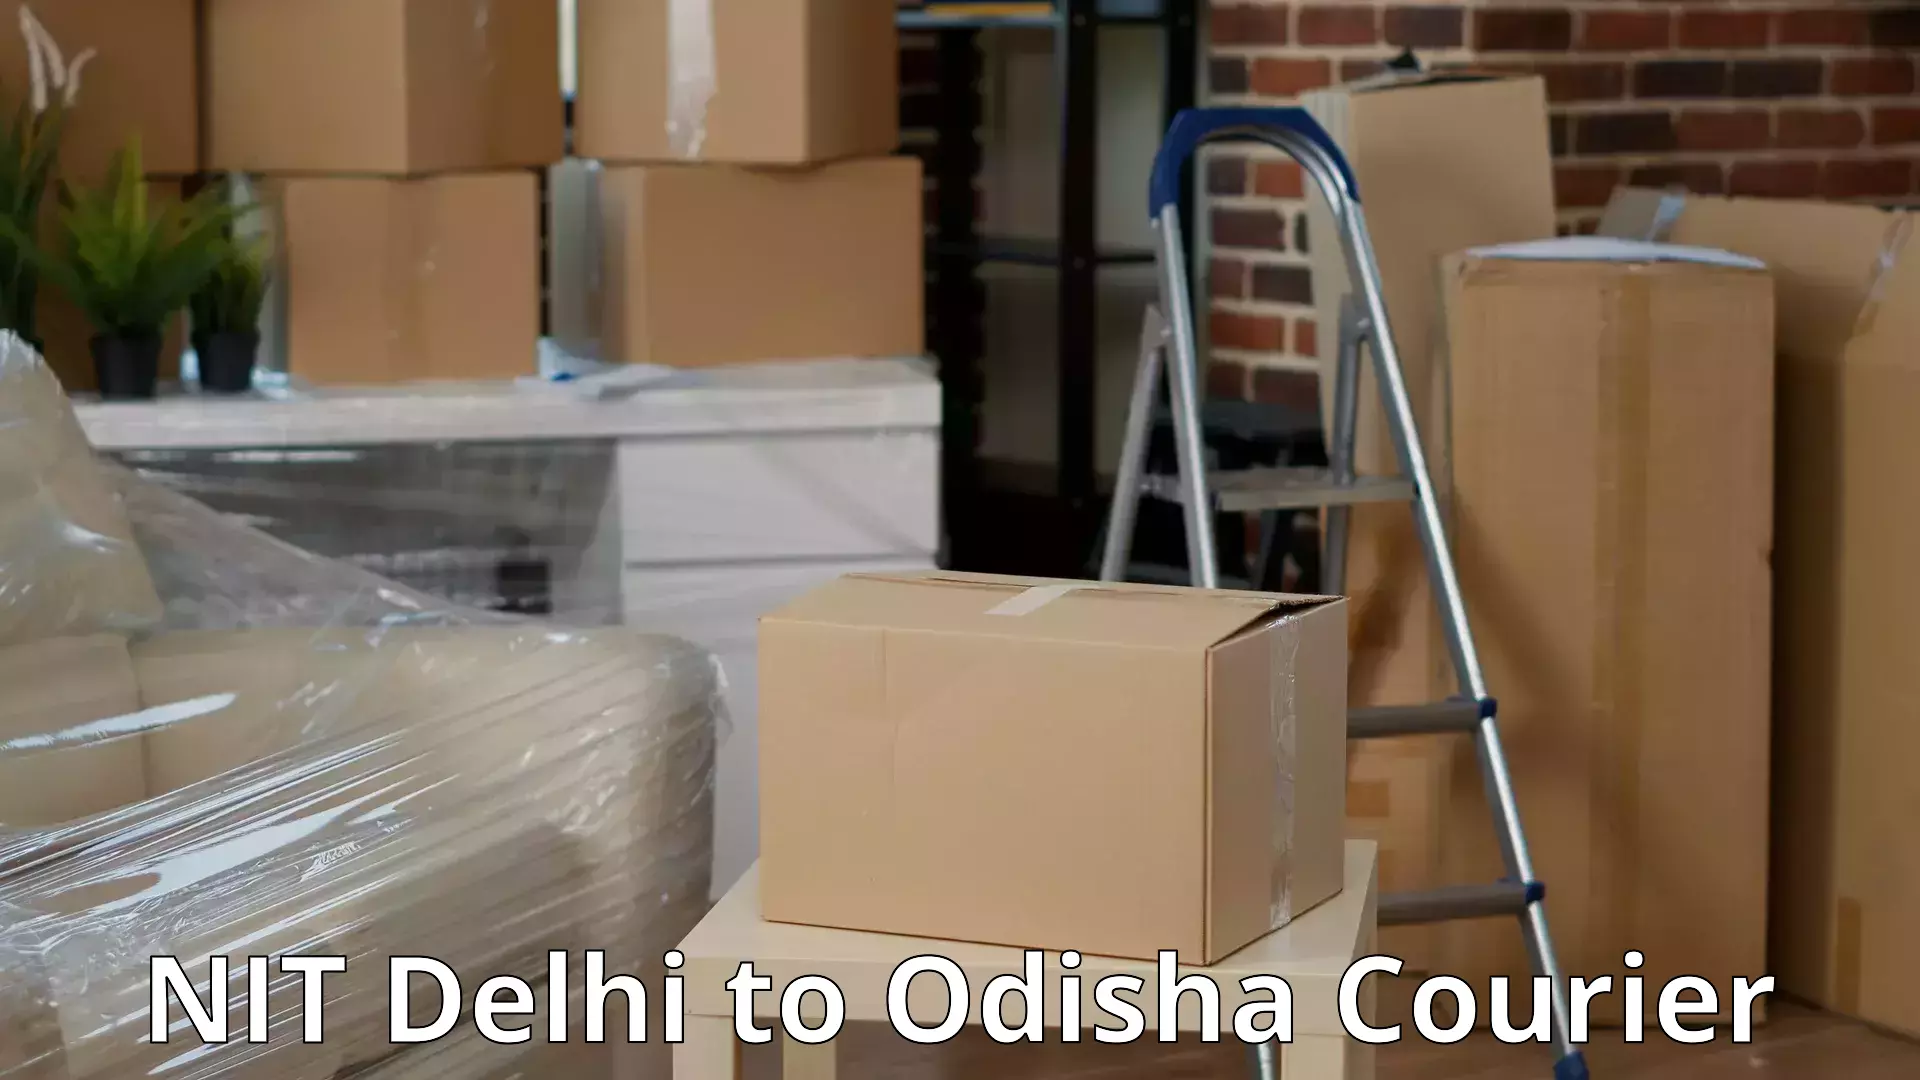 Quality moving company NIT Delhi to Gajapati